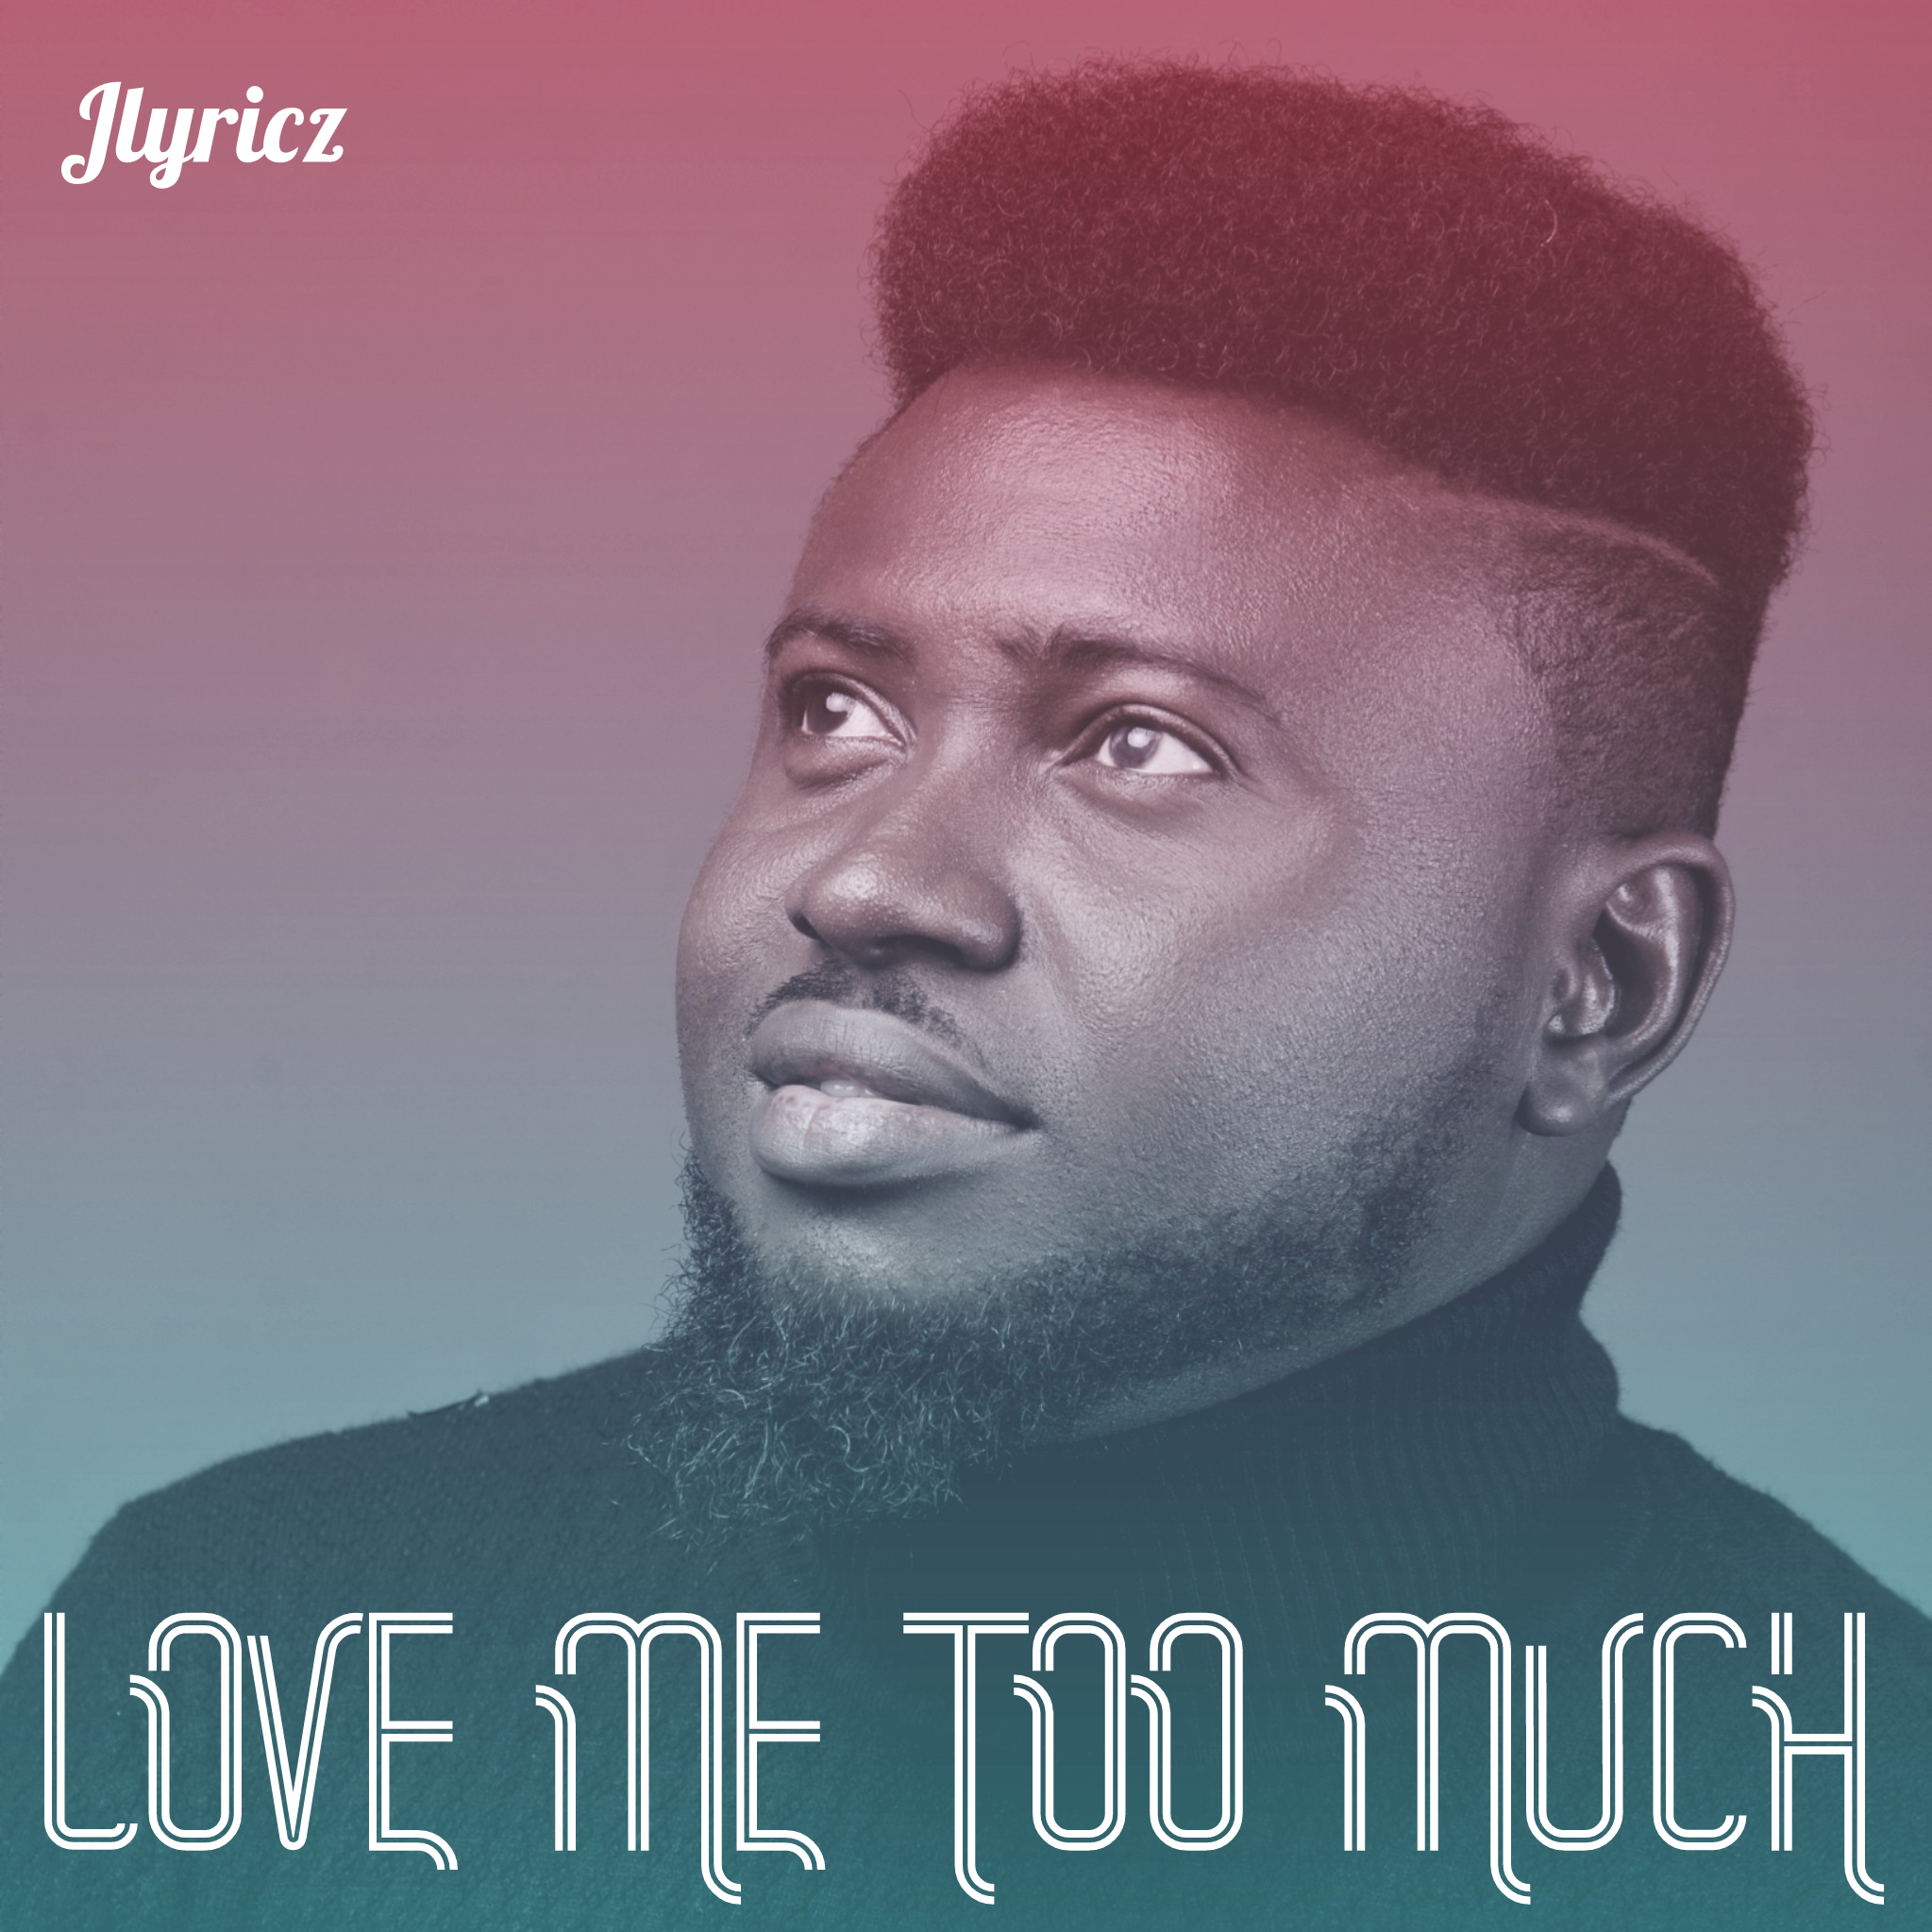 Love Me Too Much - Jlyricz